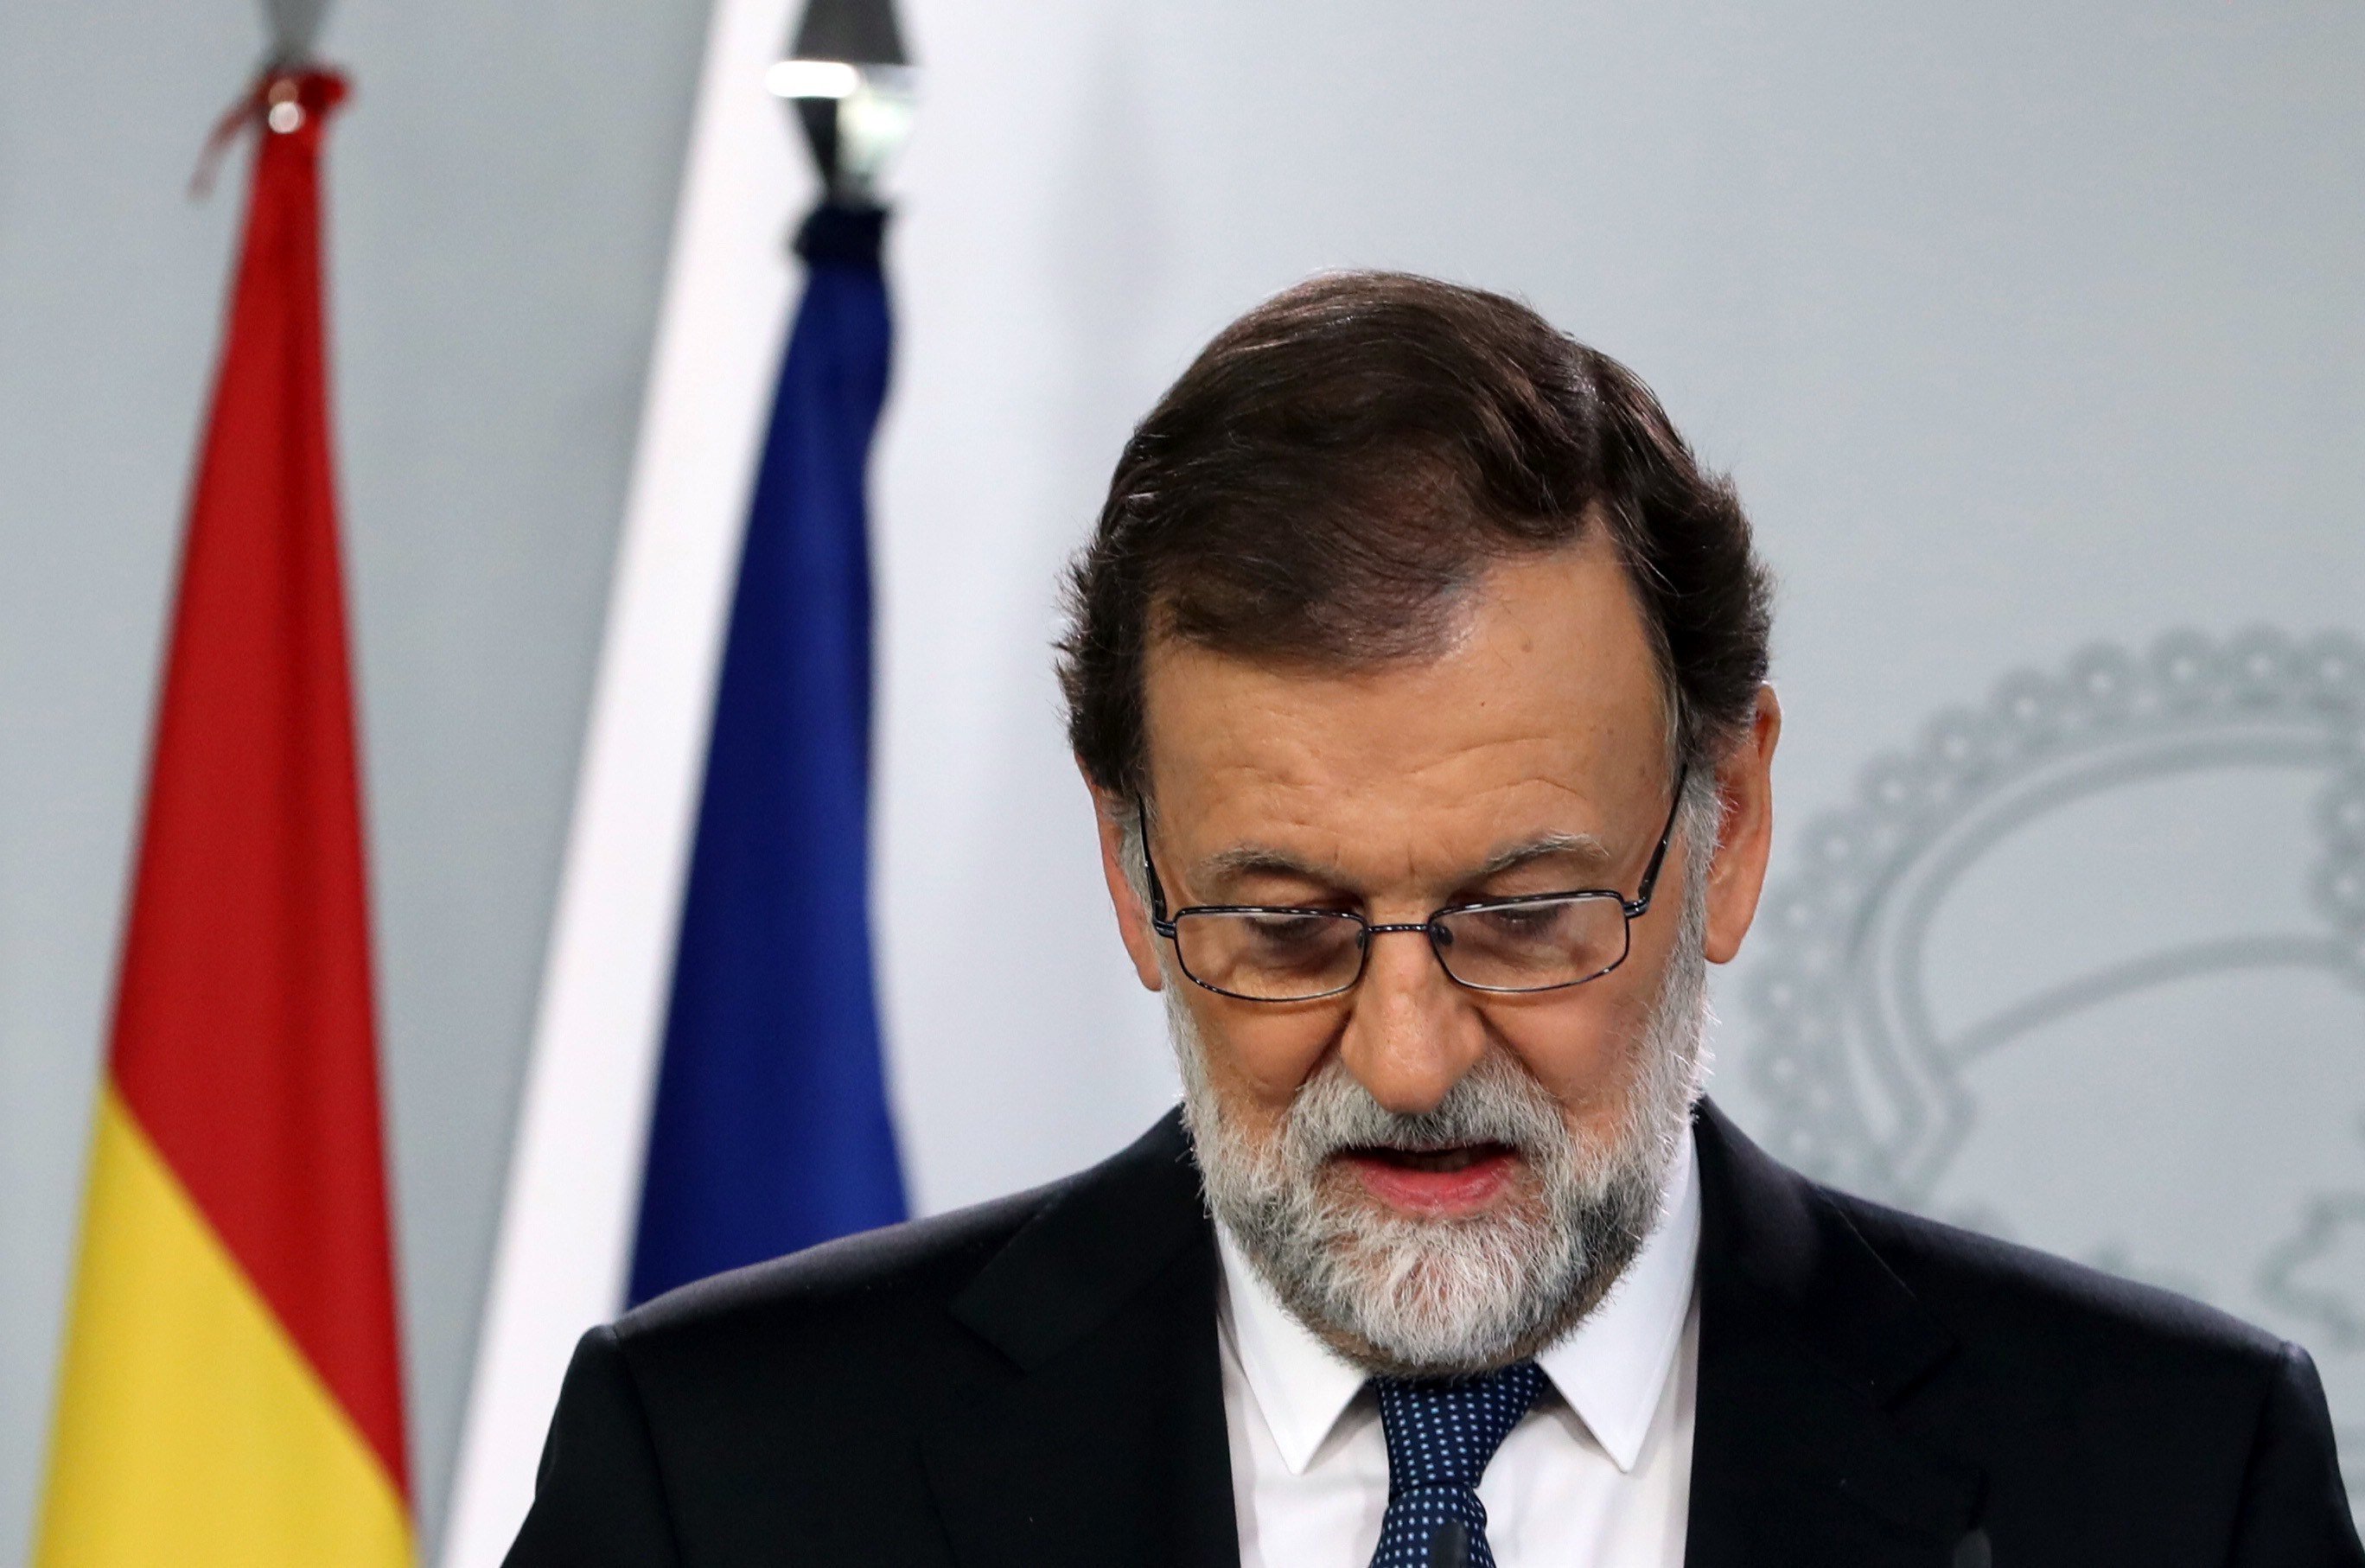 Rajoy vuelve la cara ante los heridos: "Hemos hecho lo que teníamos que hacer"